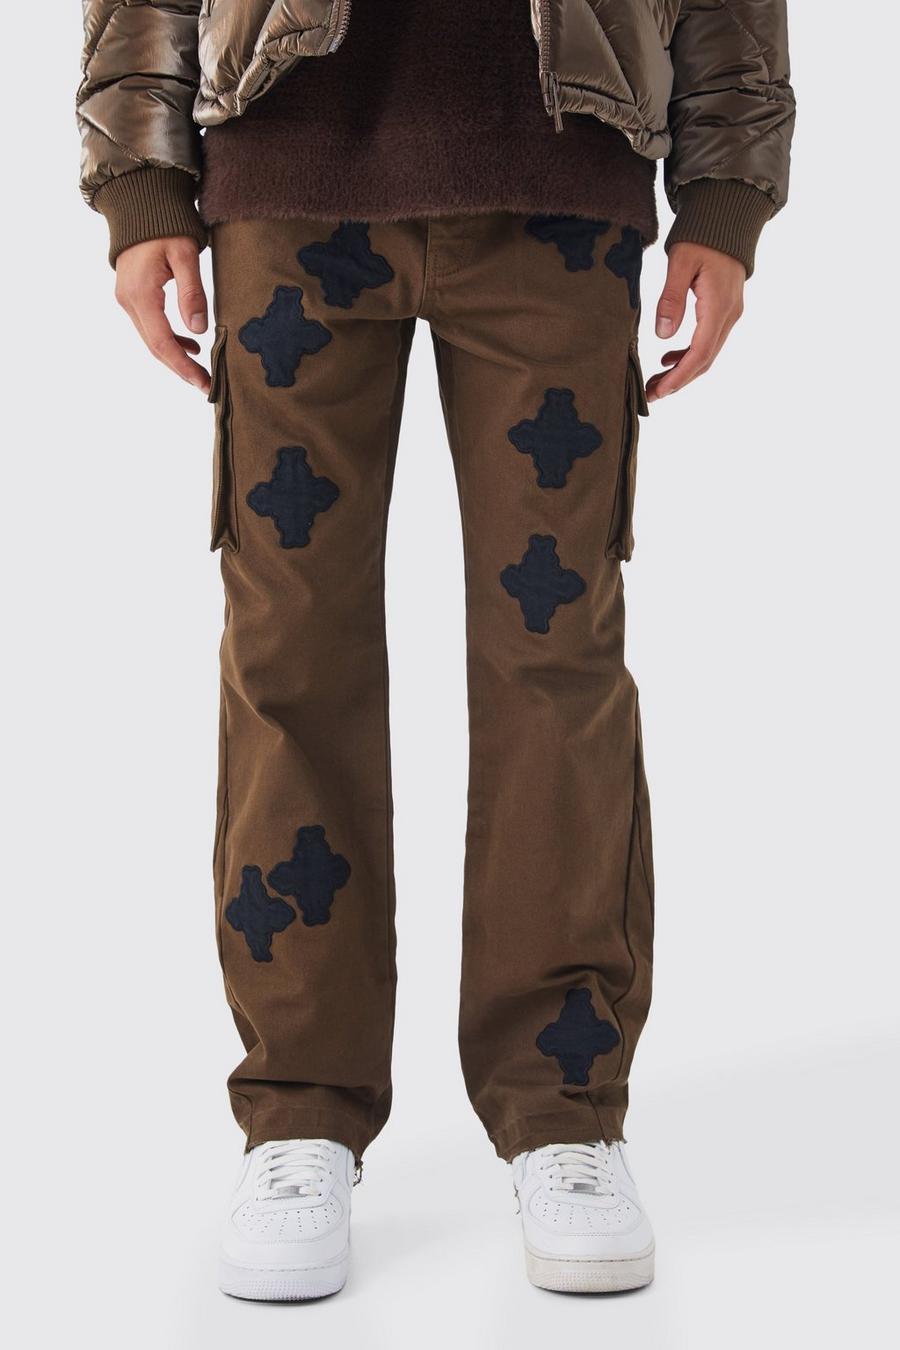 Pantalón cargo holgado con apliques, refuerzos y cintura fija, Chocolate